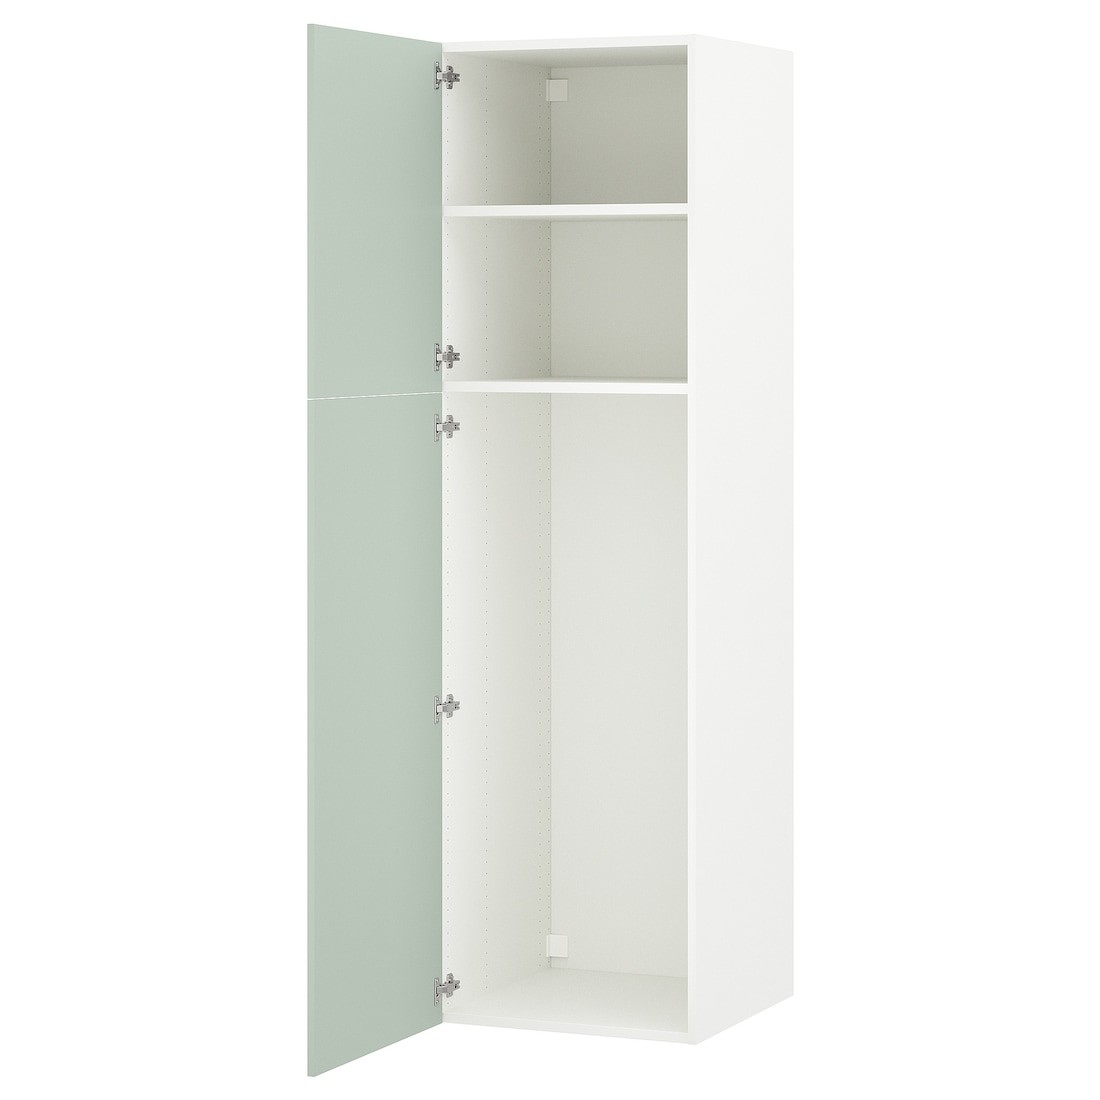 IKEA ENHET ЭНХЕТ Шкаф высокий 2 двери, белый / бледный серо-зеленый, 60x62x210 см 79496875 794.968.75